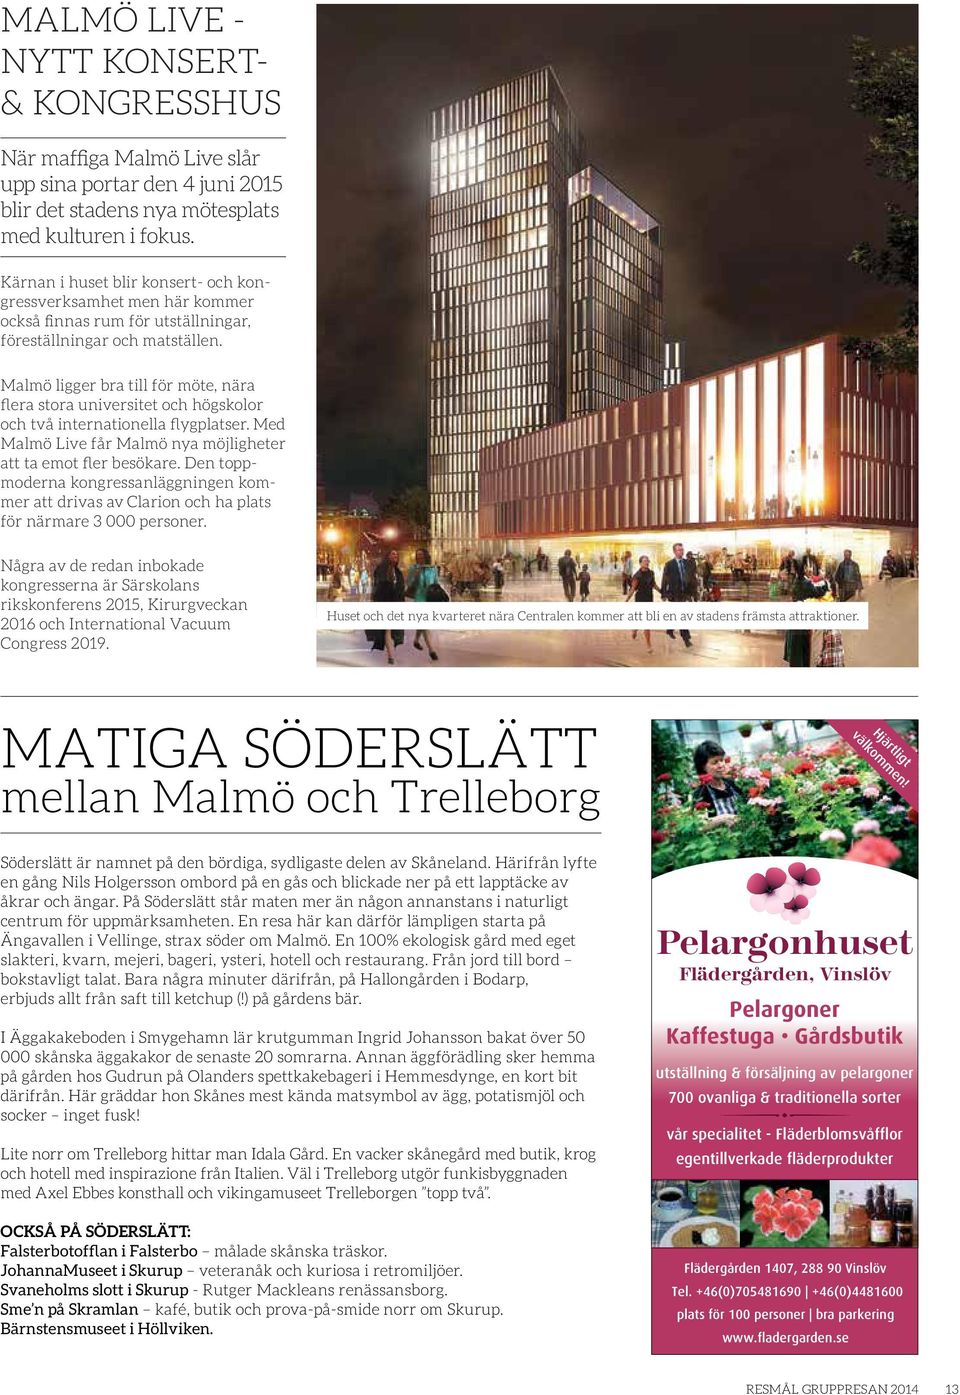 Malmö ligger bra till för möte, nära flera stora universitet och högskolor och två internationella flygplatser. Med Malmö Live får Malmö nya möjligheter att ta emot fler besökare.